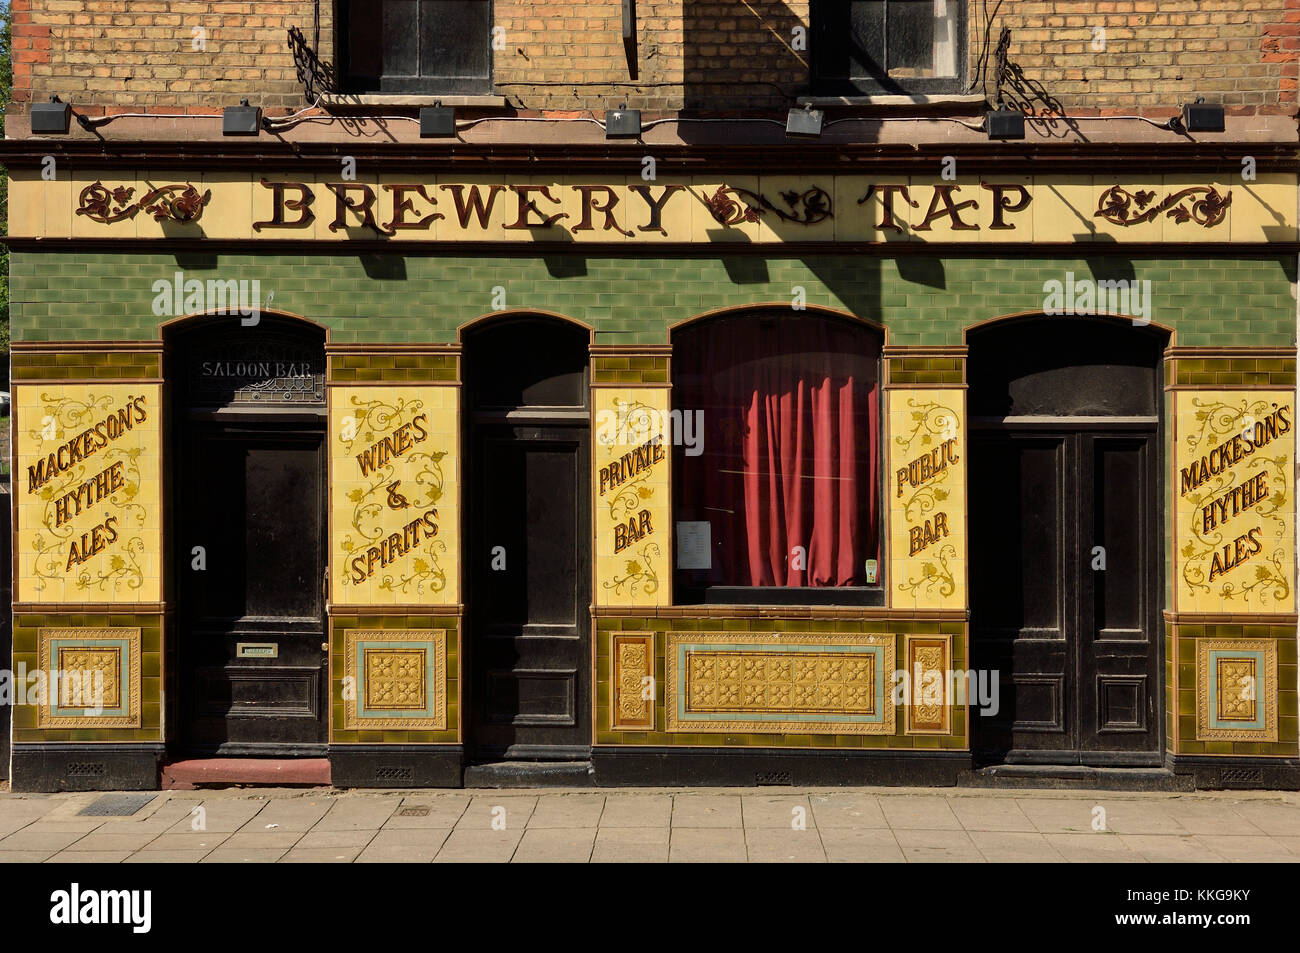 Le pub Old Brewery Tap, qui a été converti en espace d'exposition pédagogique sur les arts, Old Town, Folkestone, Kent, Angleterre, Royaume-Uni Banque D'Images